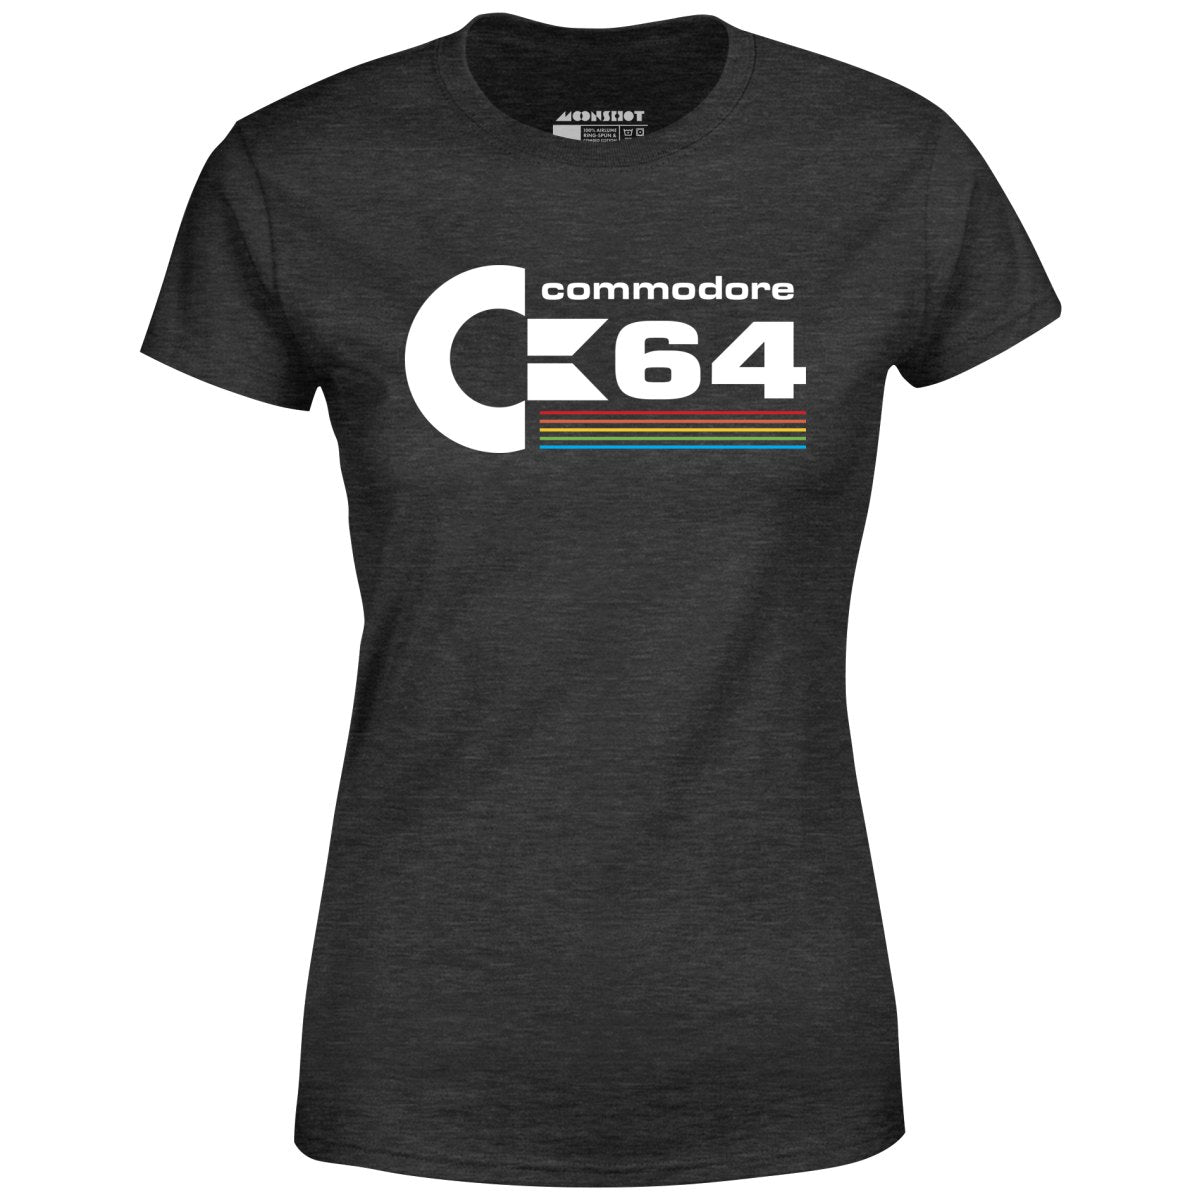 Commodore 64 - Women's T-Shirt